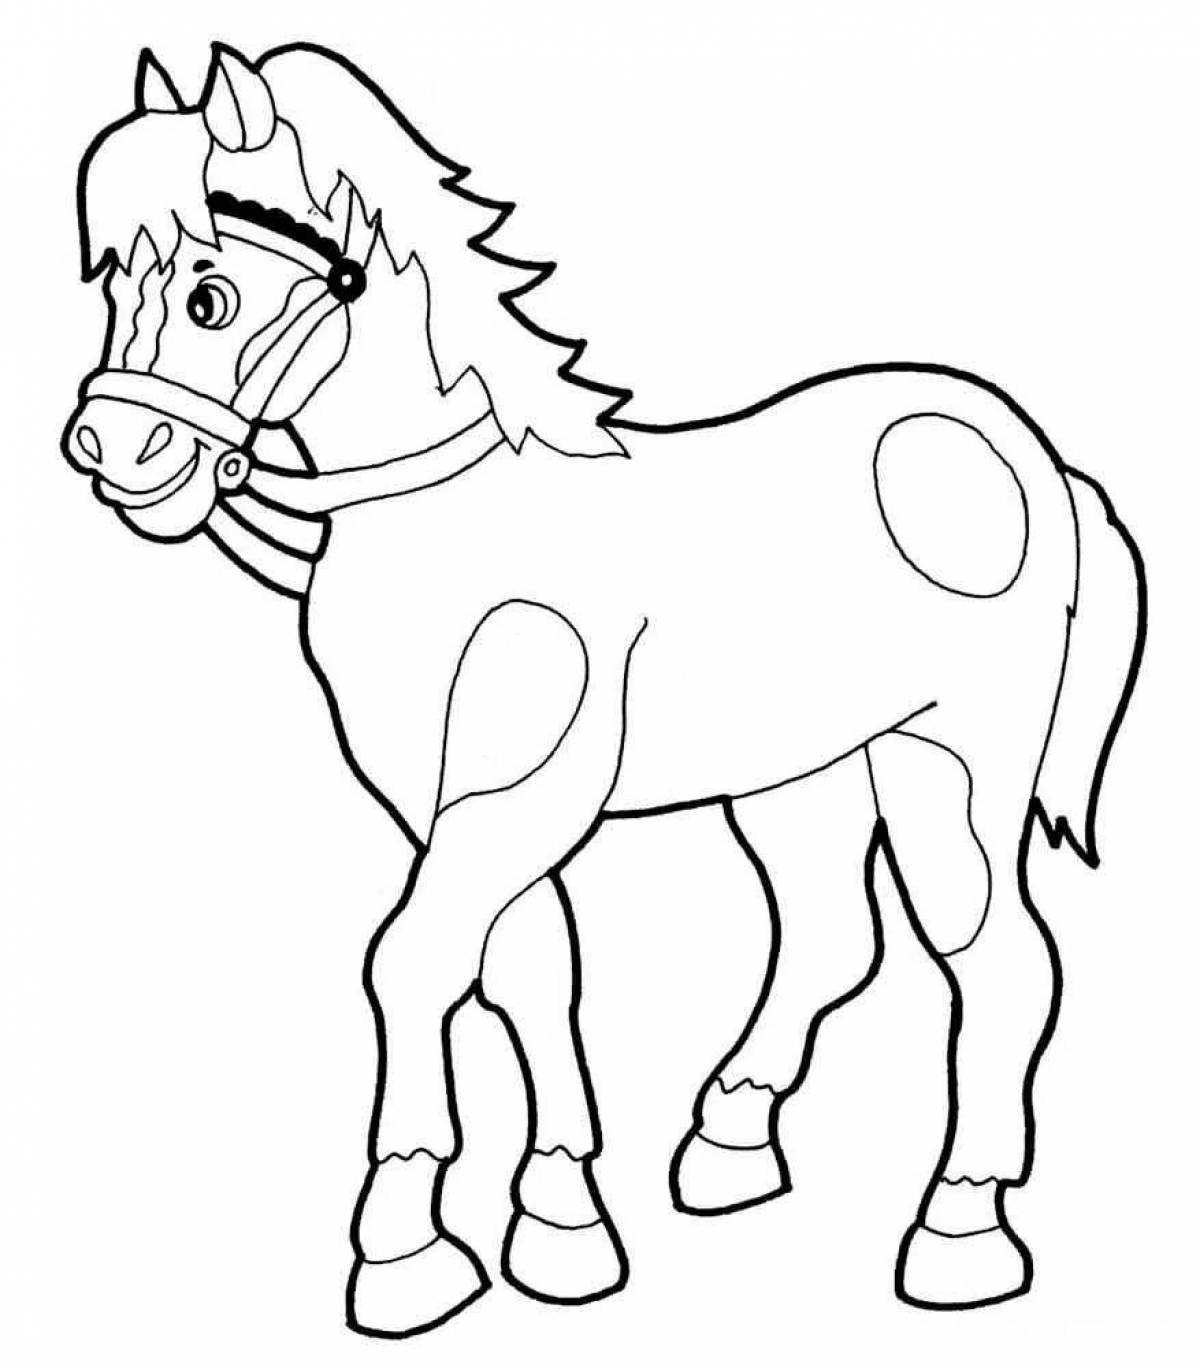 Увлекательная раскраска лошадь для детей 4-5 лет